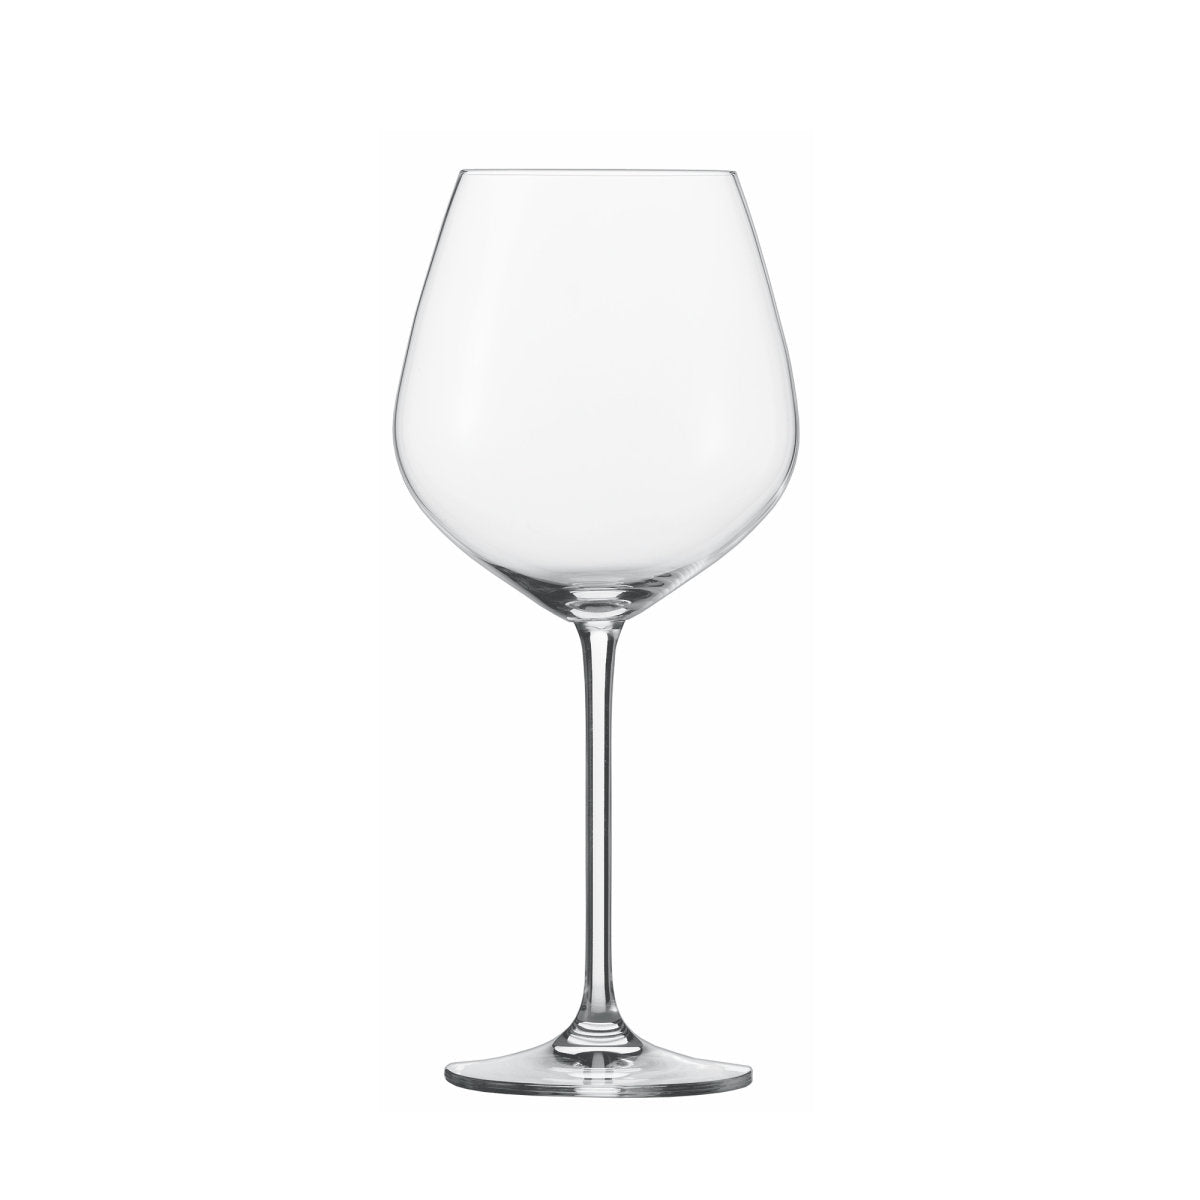 Fortissimo Burgundy Glasses - Set of 6